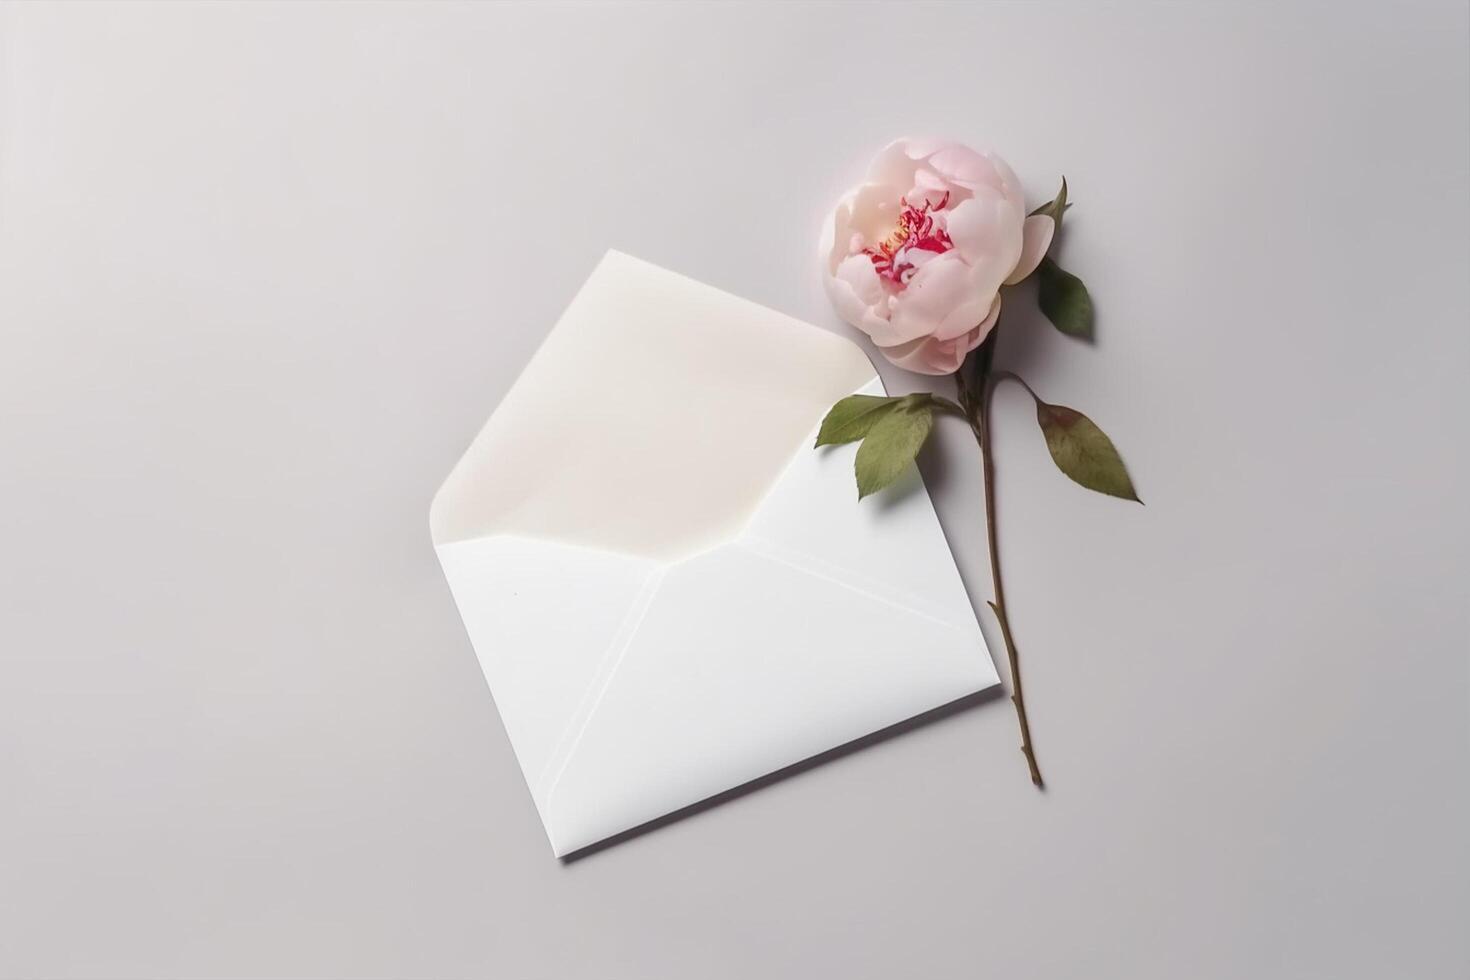 Delicate flower on white envelope, photo